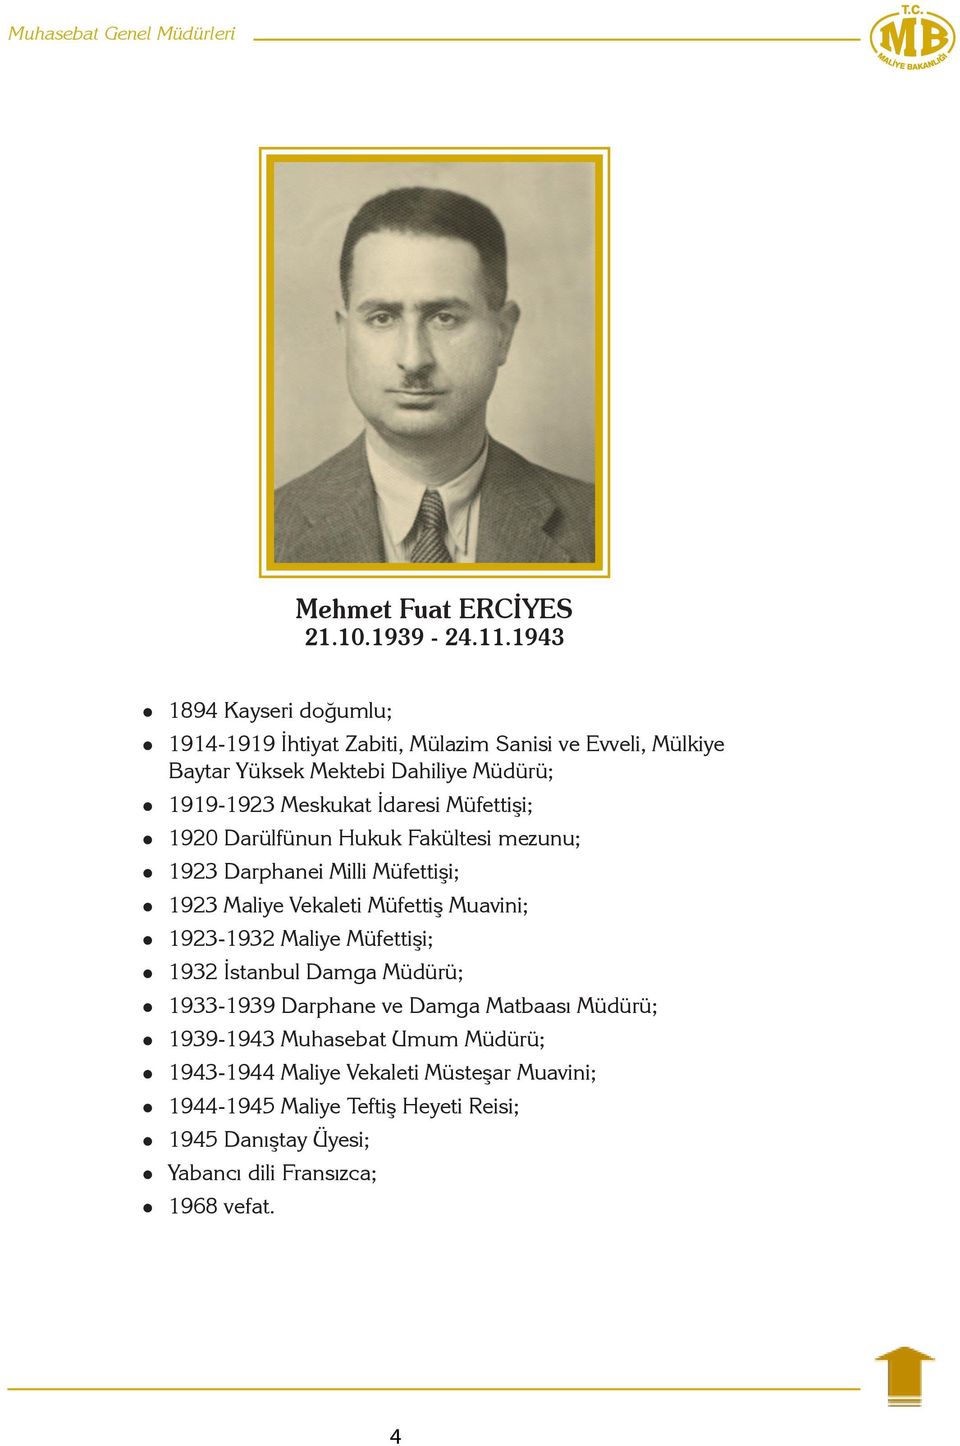 Müfettişi; 1920 Darülfünun Hukuk Fakültesi mezunu; 1923 Darphanei Milli Müfettişi; 1923 Maliye Vekaleti Müfettiş Muavini; 1923-1932 Maliye Müfettişi;